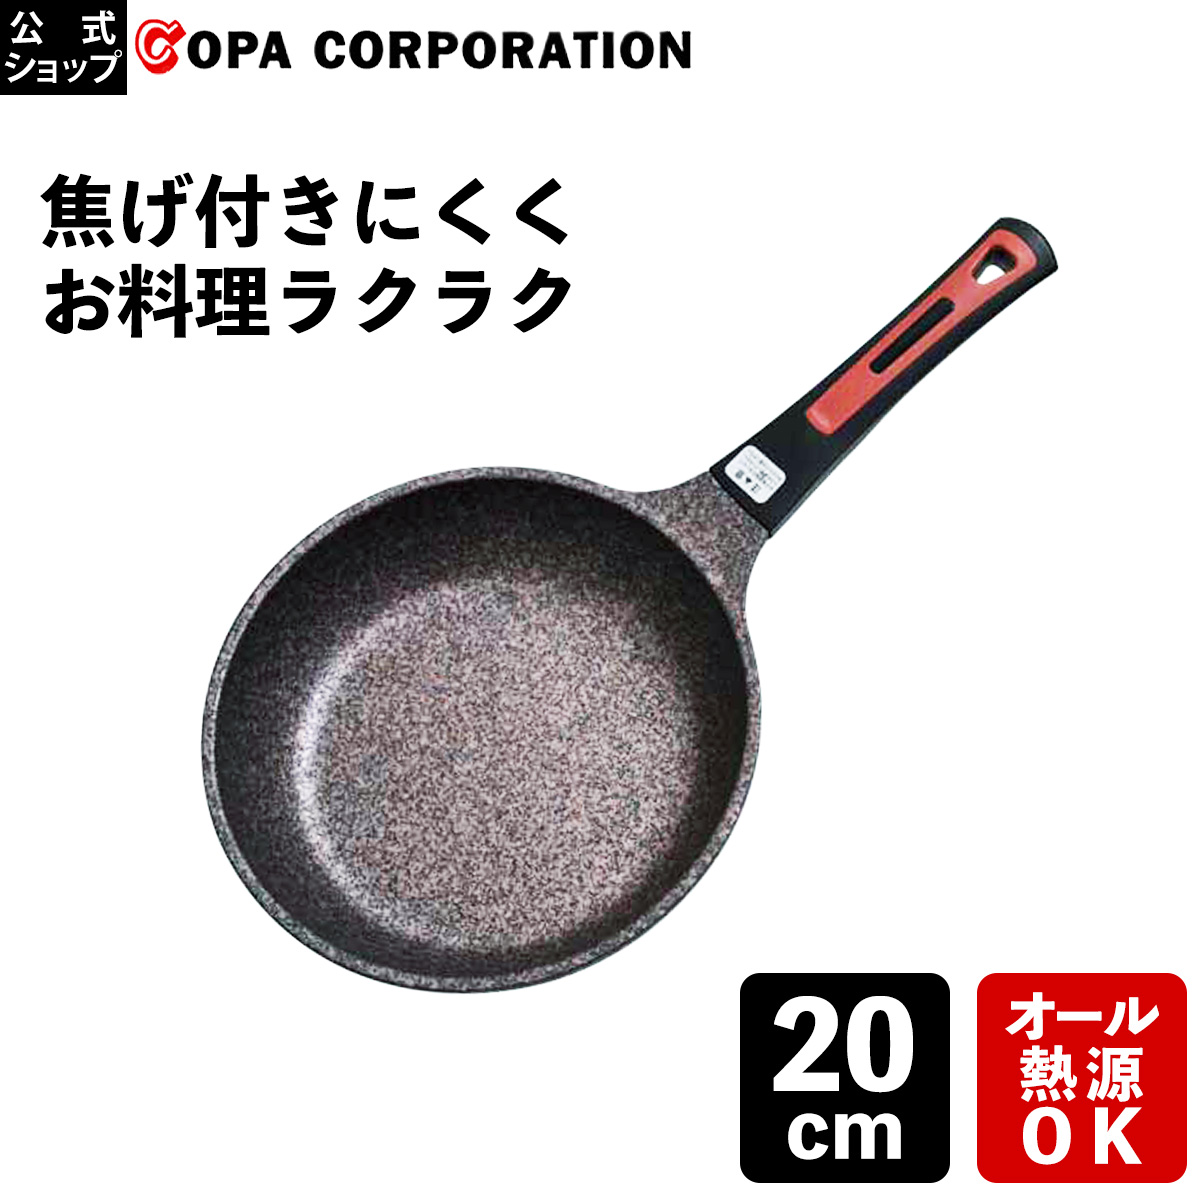 安い人気neko様専用フライパン 2点 28cm 26cmスーパーストーンバリア 鍋/フライパン